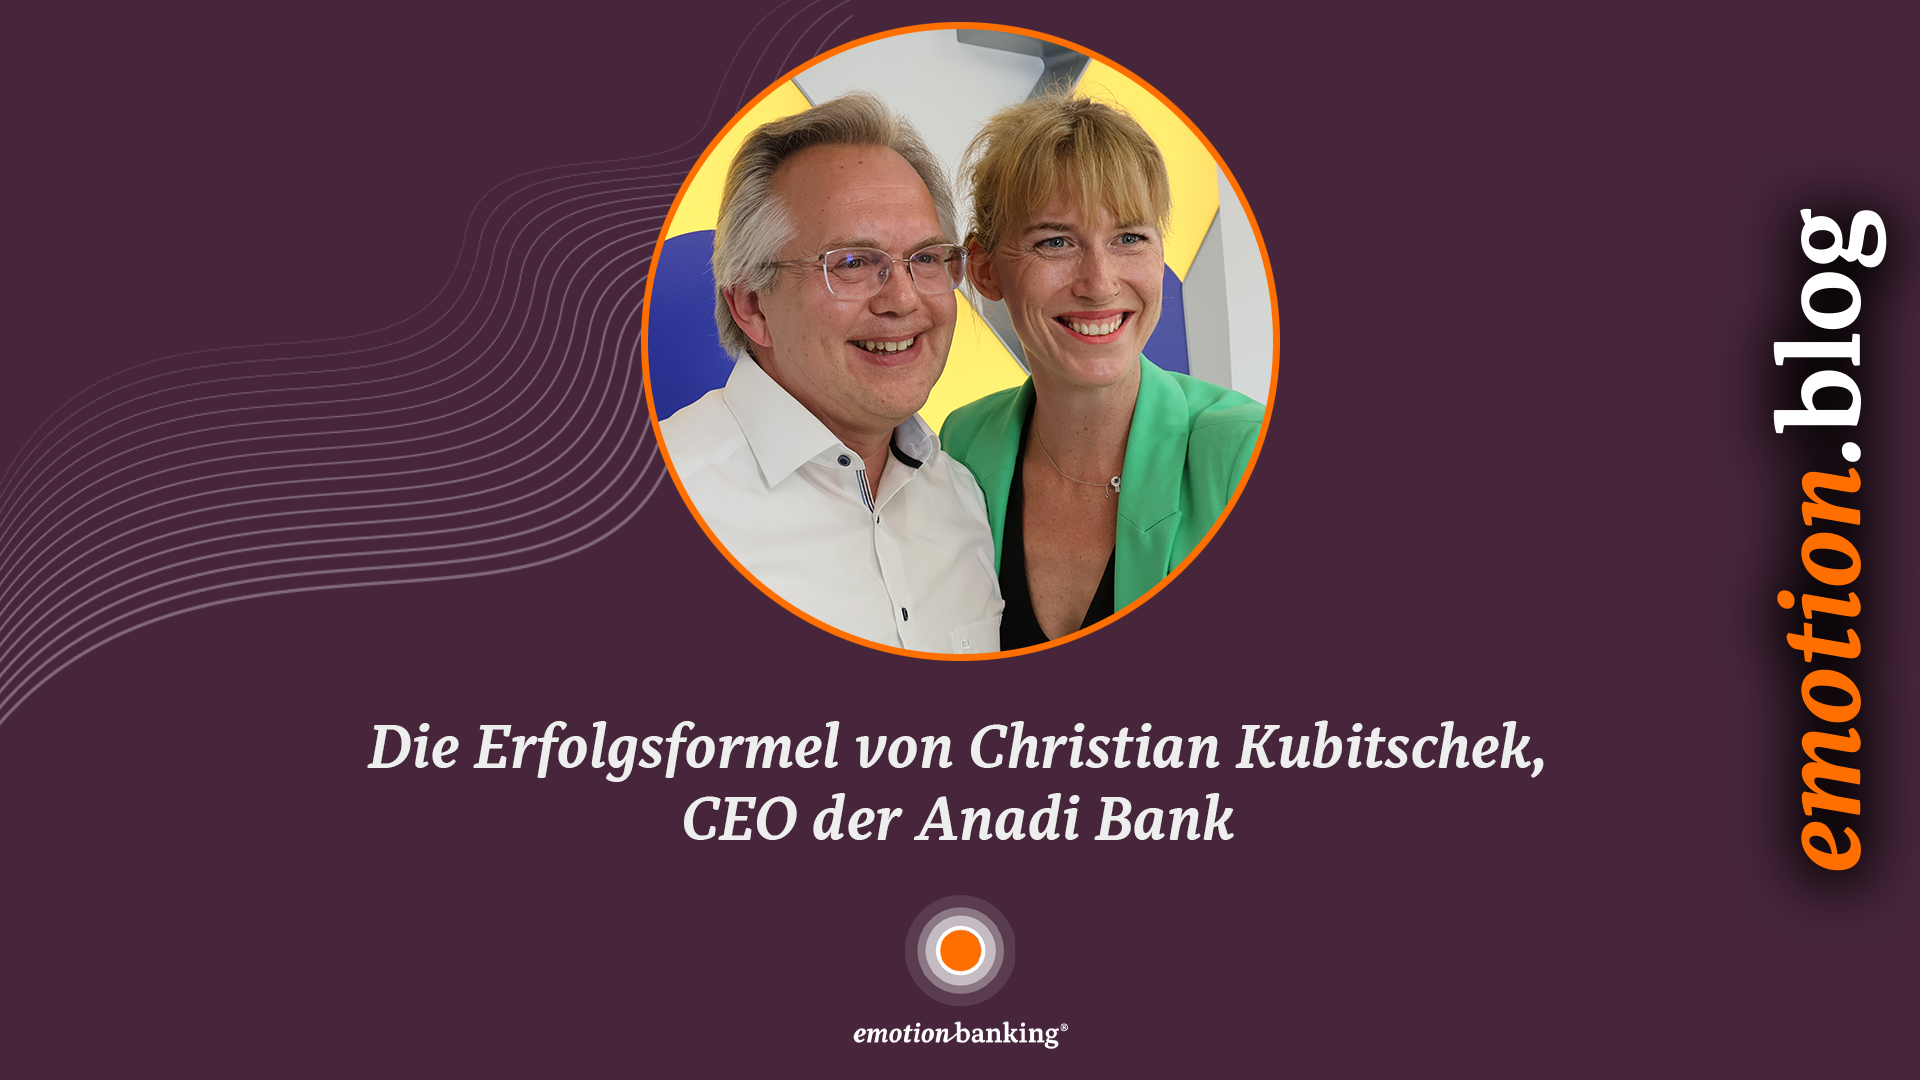 Die Erfolgsformel von Christian Kubitschek, CEO der Anadi Bank